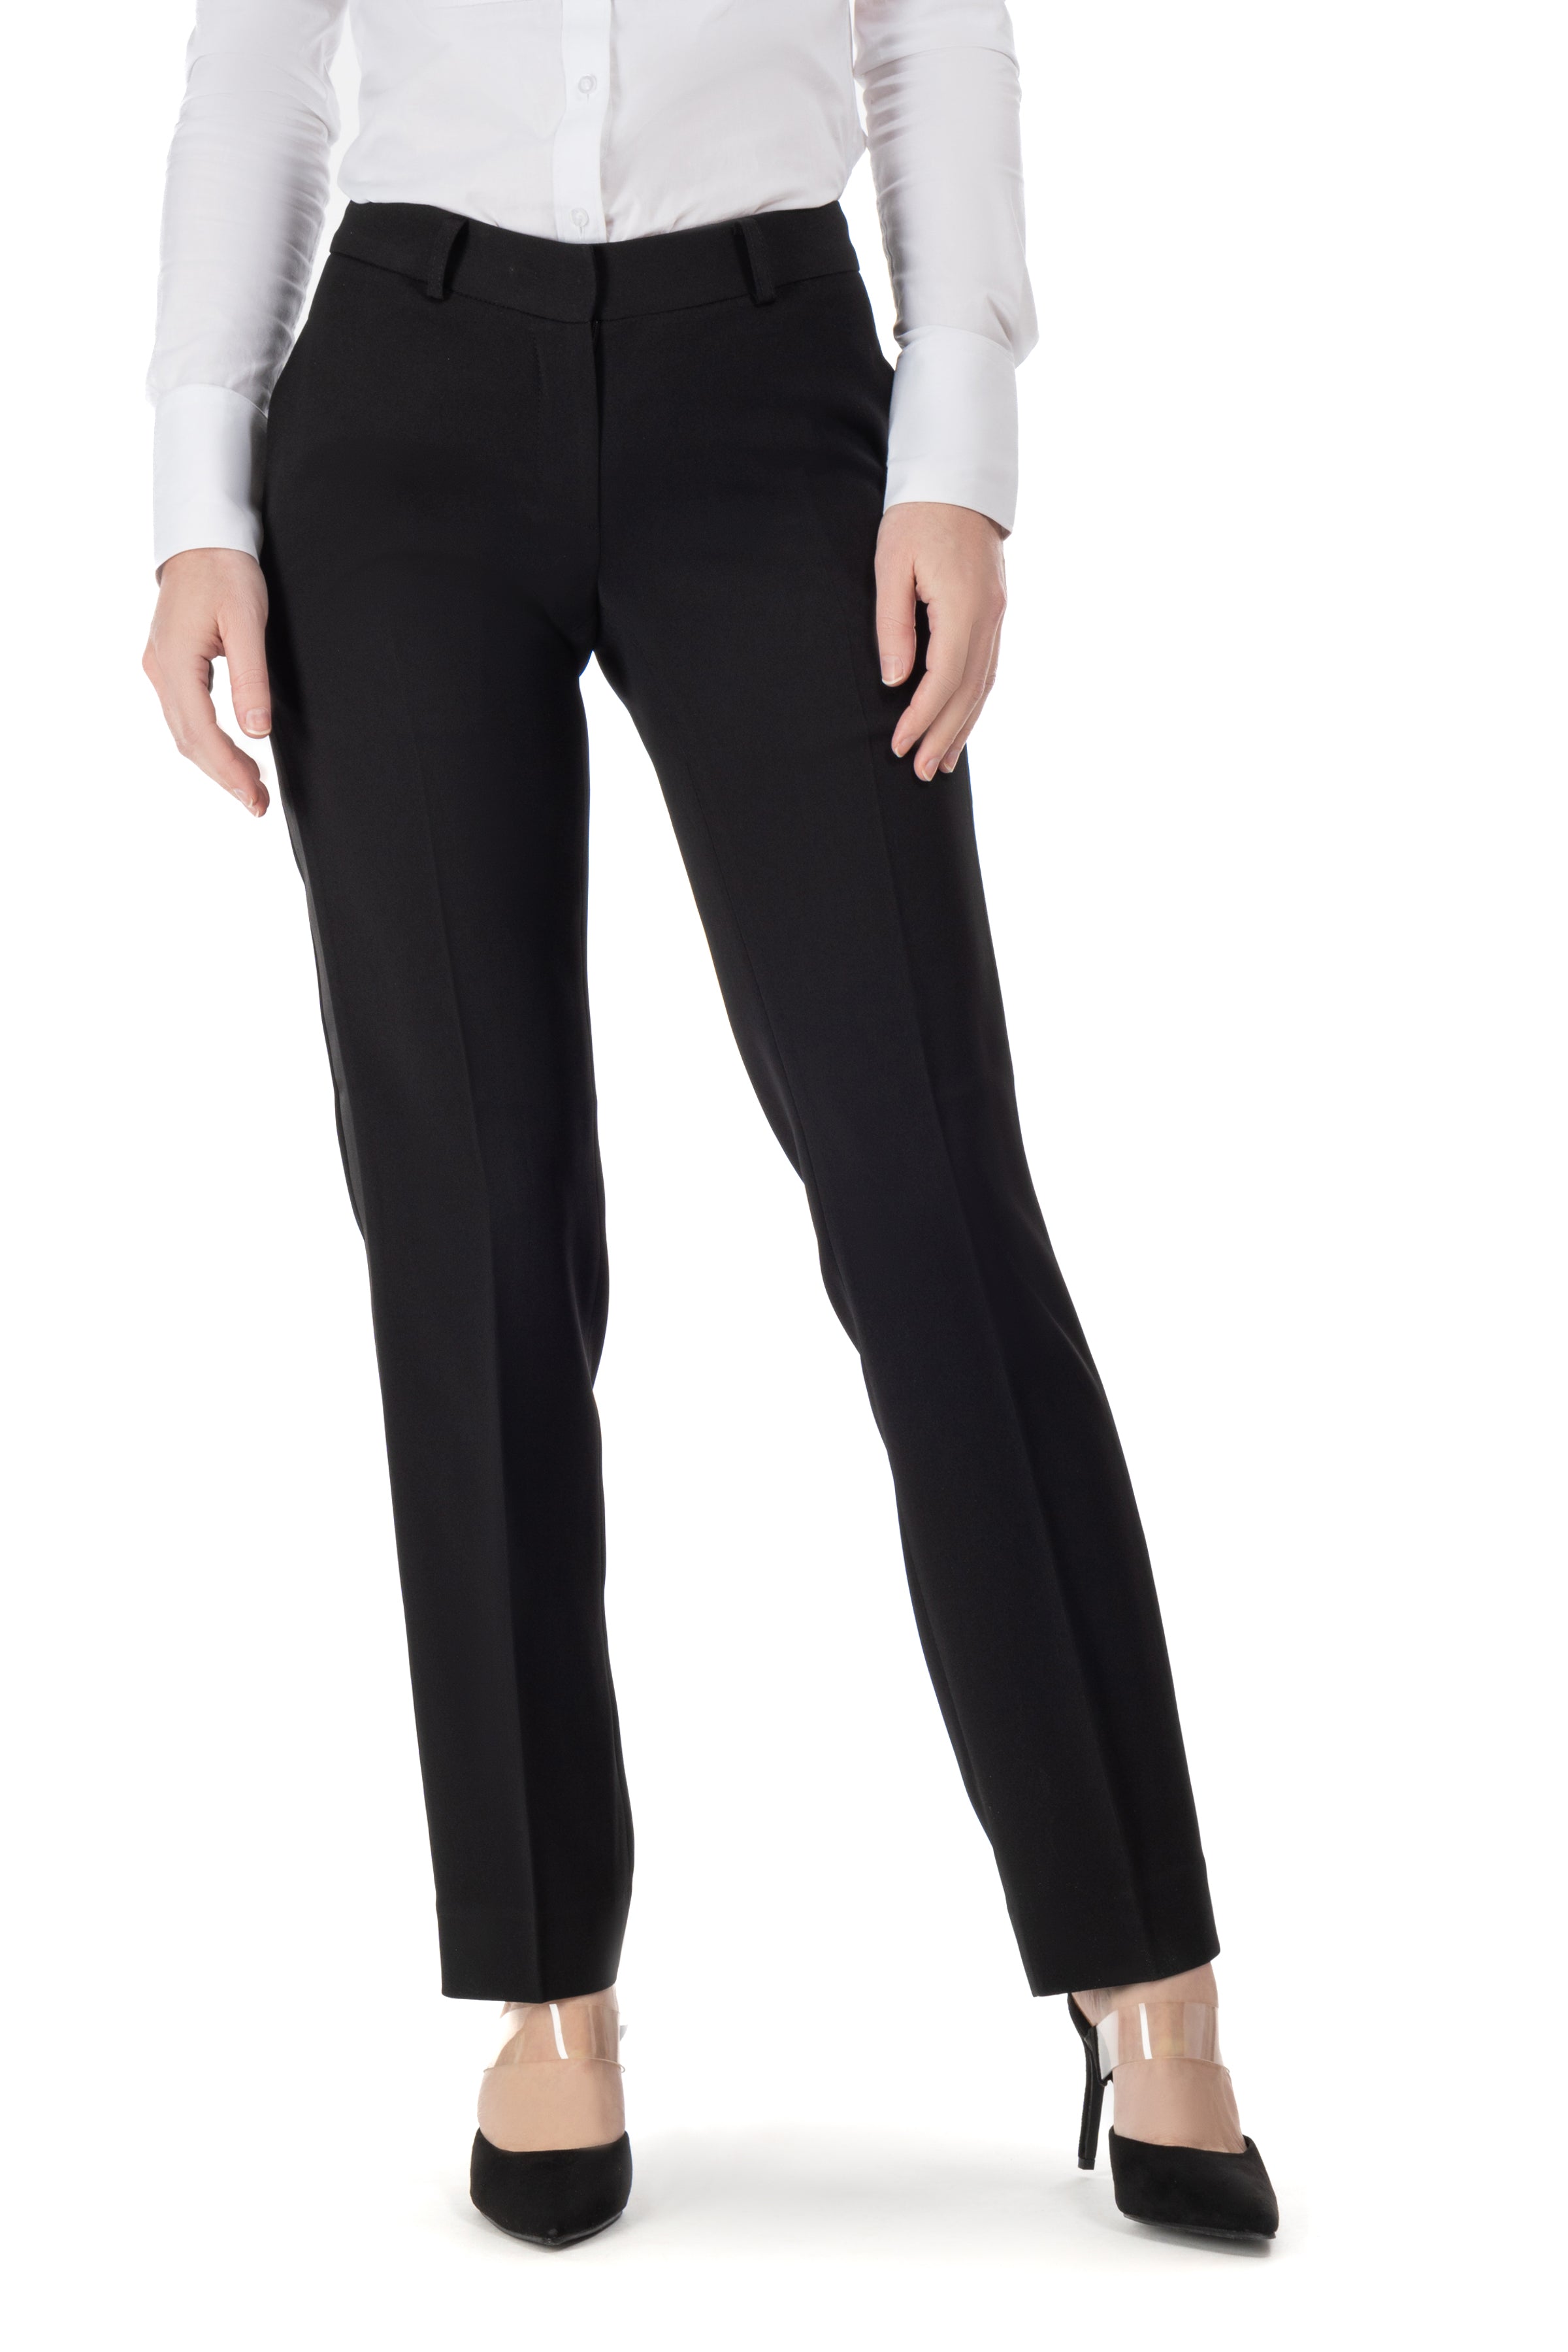 Curvy Collection [Plus Size] Women's Tuxedo Suits – LITTLE BLACK TUX